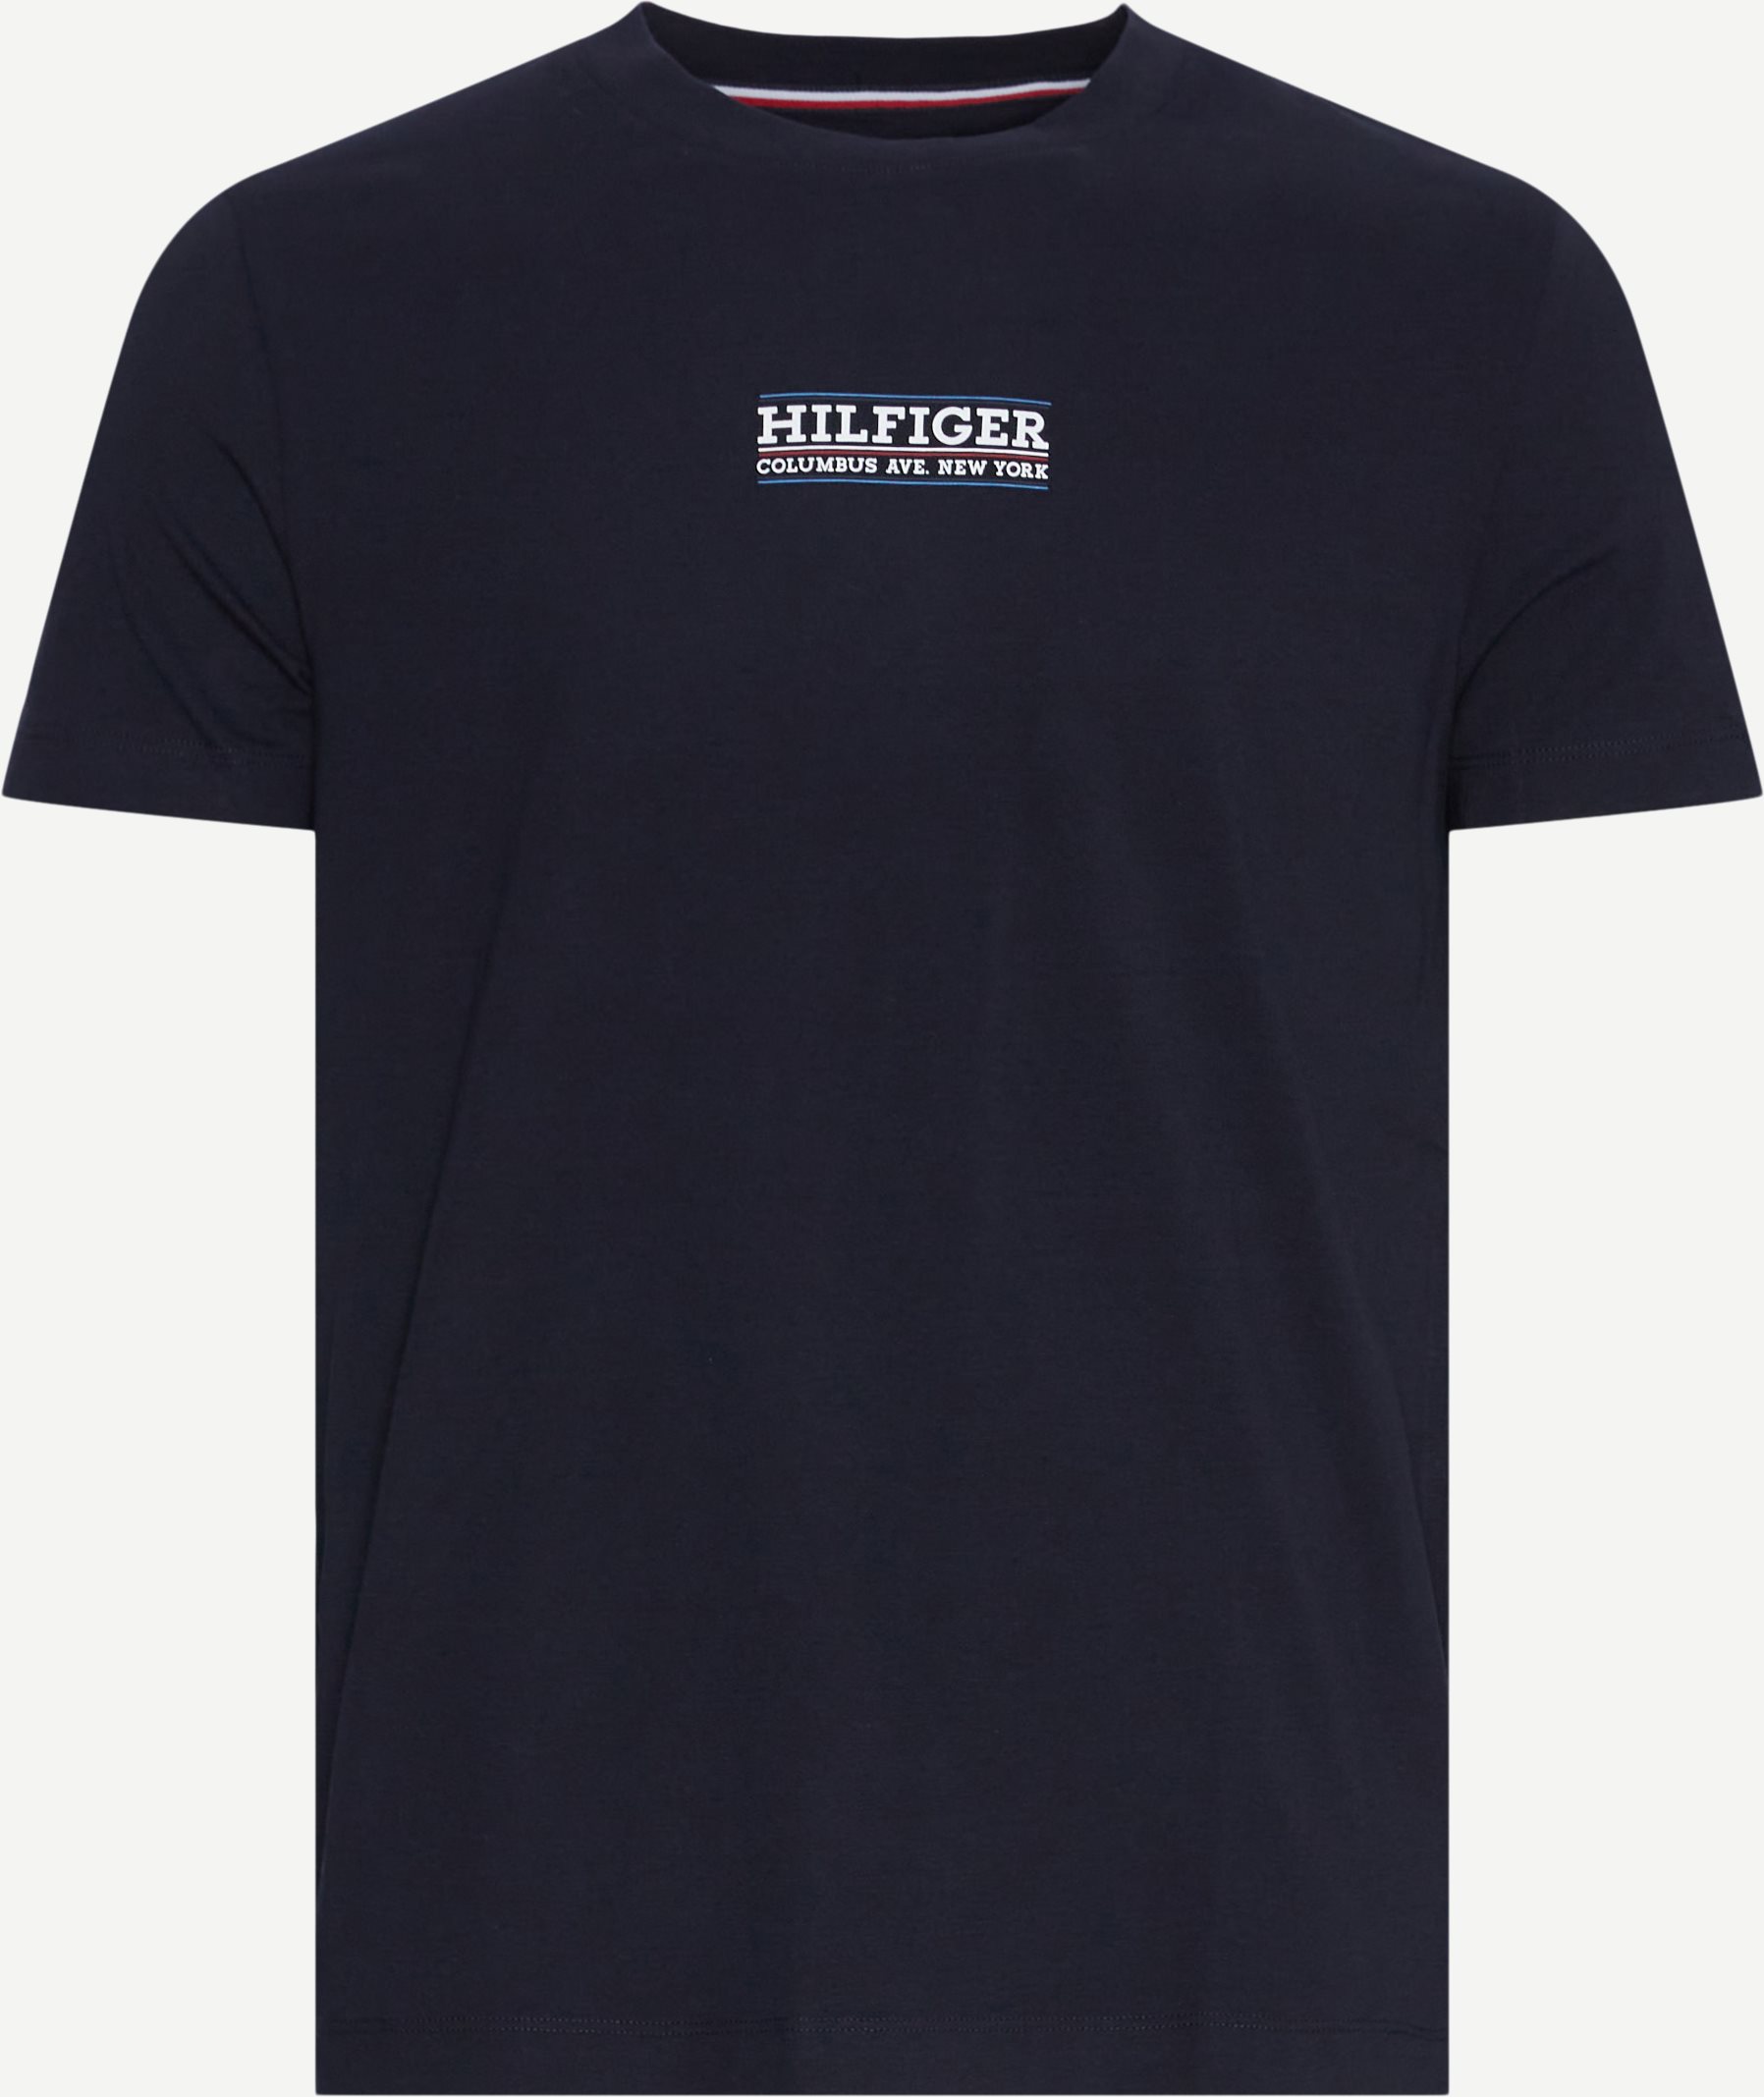 Tommy Hilfiger T-shirts 34387 SMALL HILFIGER TEE Blue